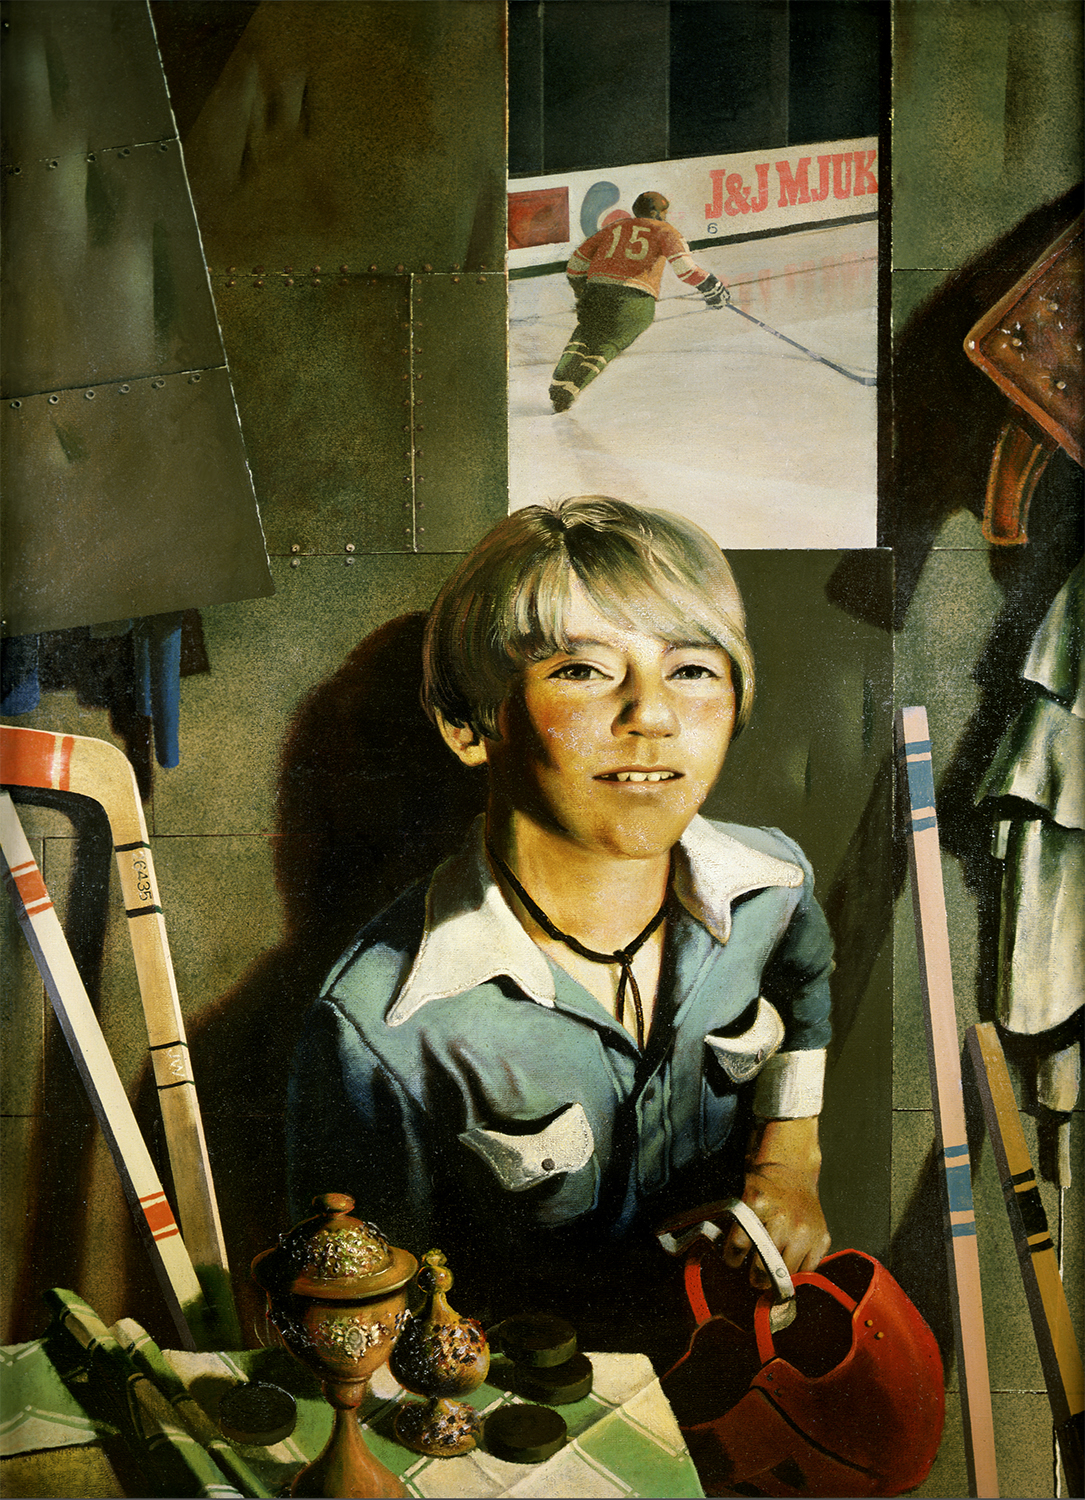 スーパーリアリストはその作品の中で、芸術的幻想と現実の間にある従来からの相反を取り除いている。写真のイメージは「第二の本質」とみなされ、知覚の全否定と前衛主義に取って代わった。／タンミク「少年とホッケースティックとヘルメット」（1978-1979）、国立トレチャコフ美術館